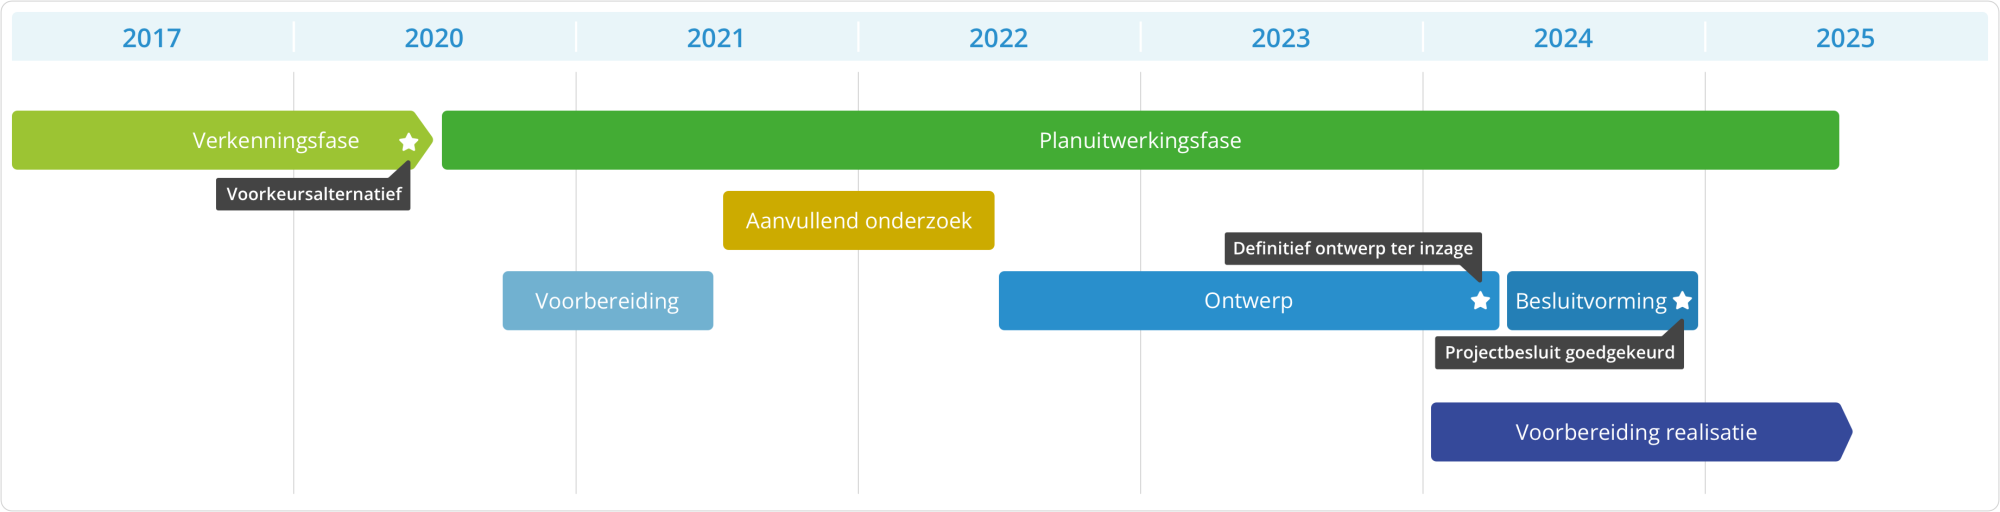 Globale tijdlijn van het project. Tot 2020 verkenningsfase. Van 2020 tot 2025 planuitwerkingsfase waarin ontwerp wordt uitgewerkt. Vanaf 2024 start de voorbereiding voor de realisatie.